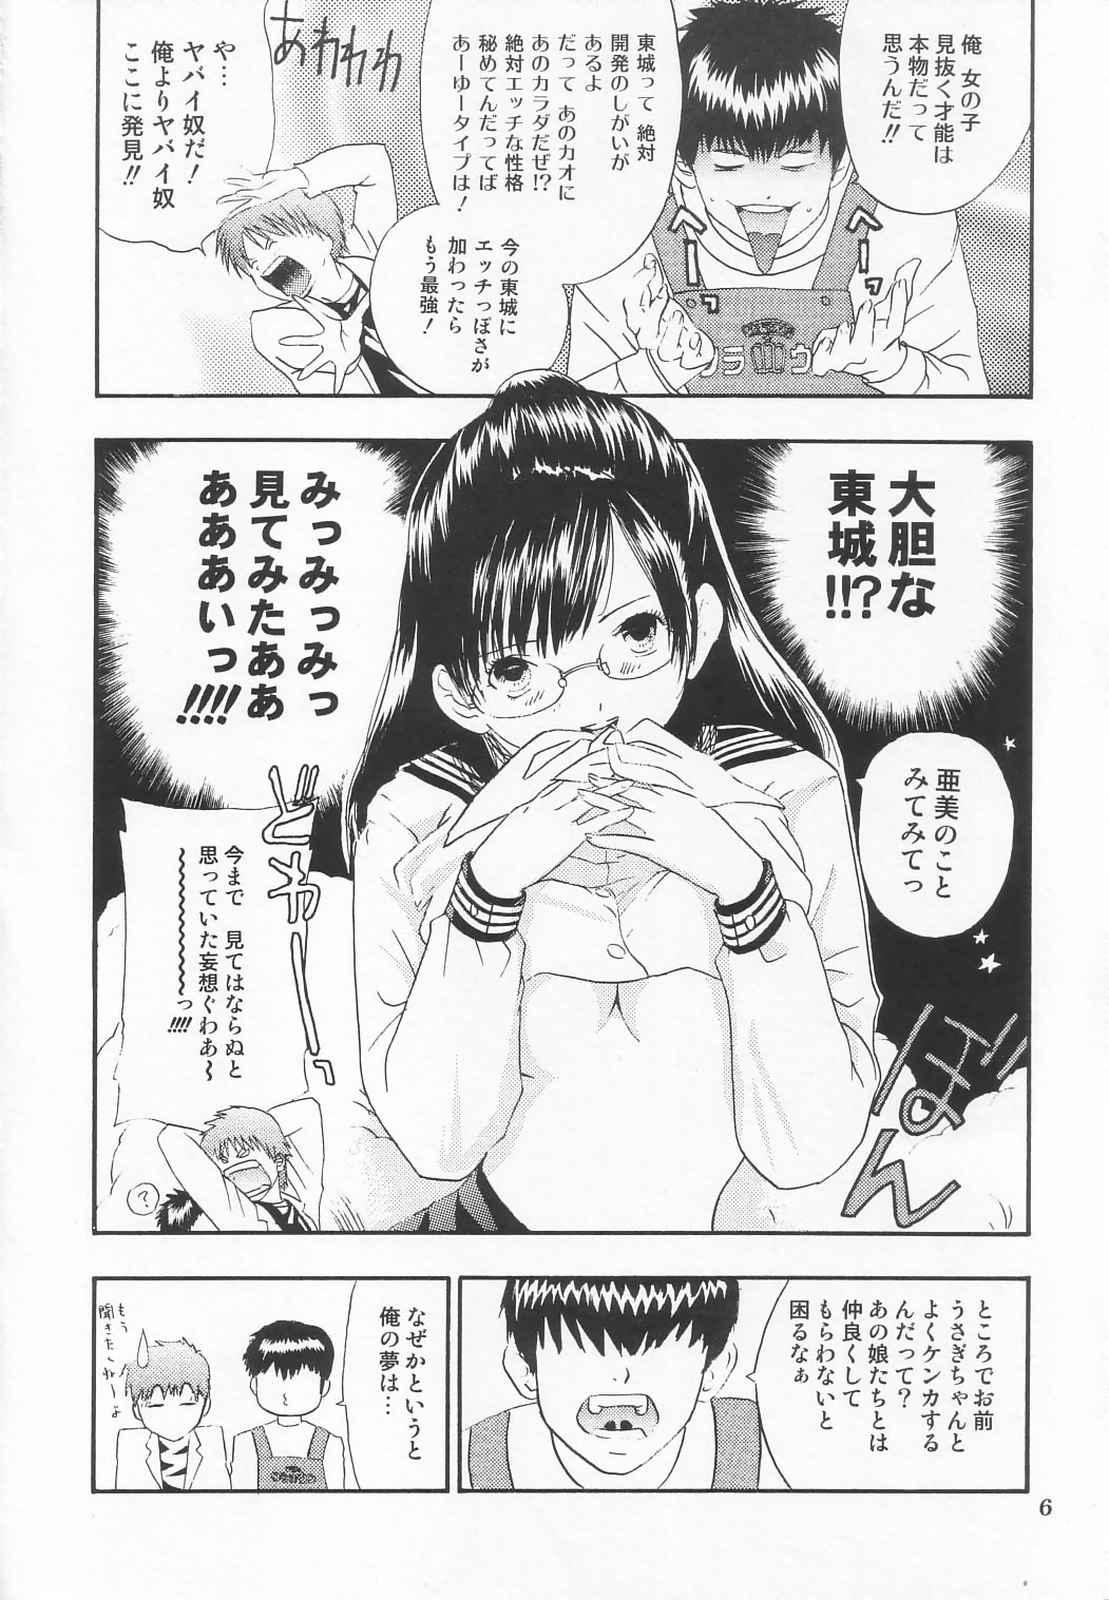 Amiga Tokusatsu Magazine x 2003 Fuyu Gou - Sailor moon Ichigo 100 Public Sex - Page 8